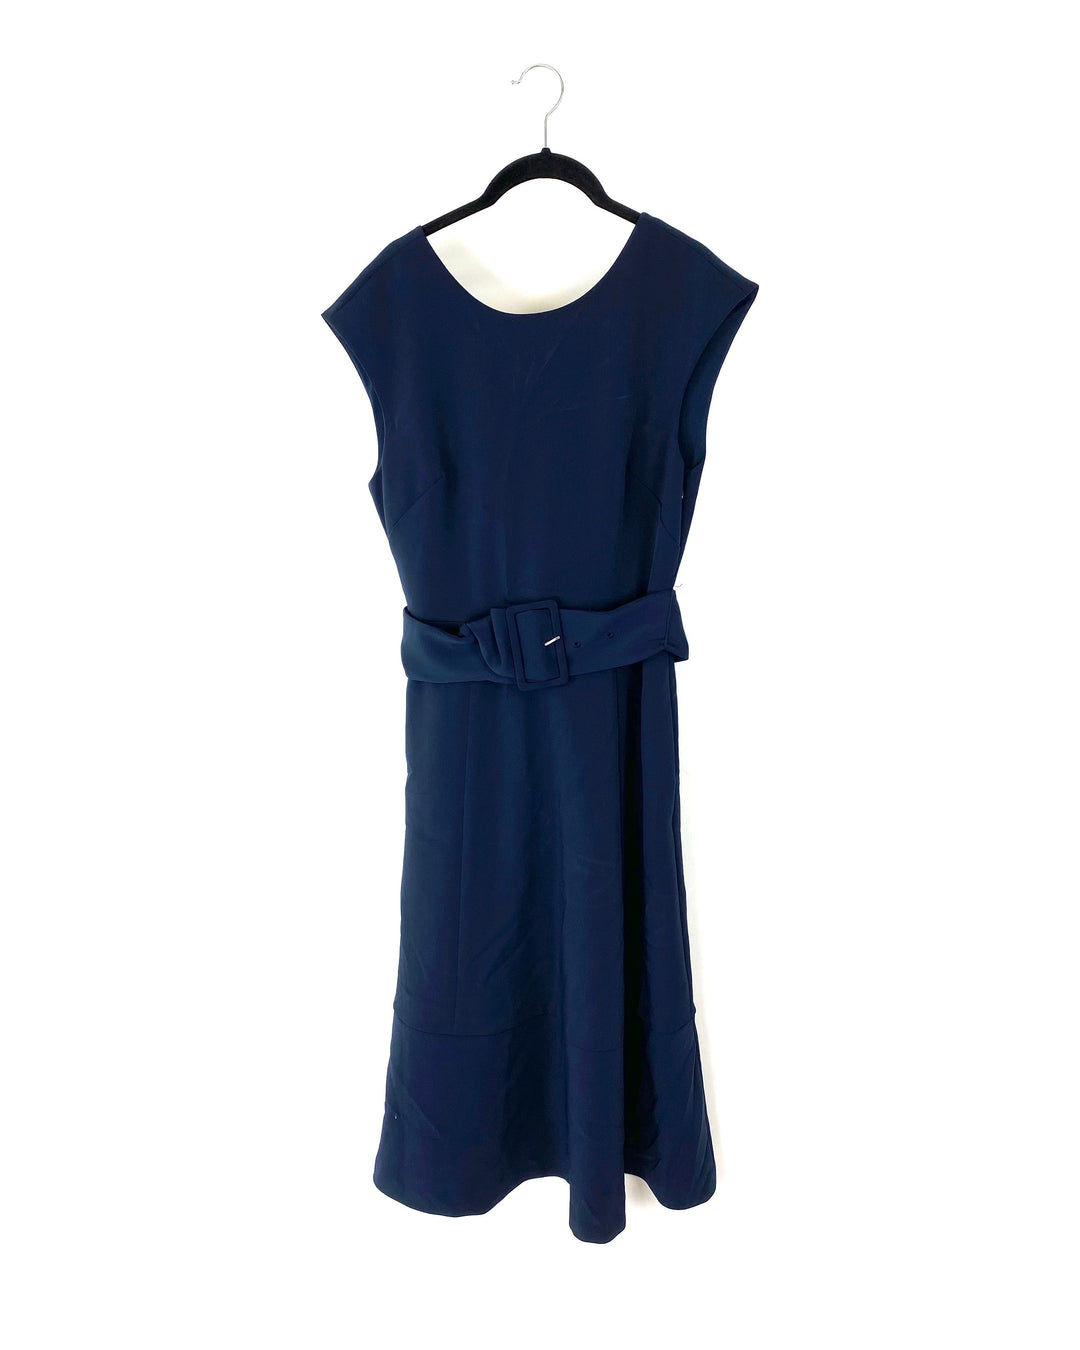 Navy Blue Maxi Dress - Size 4